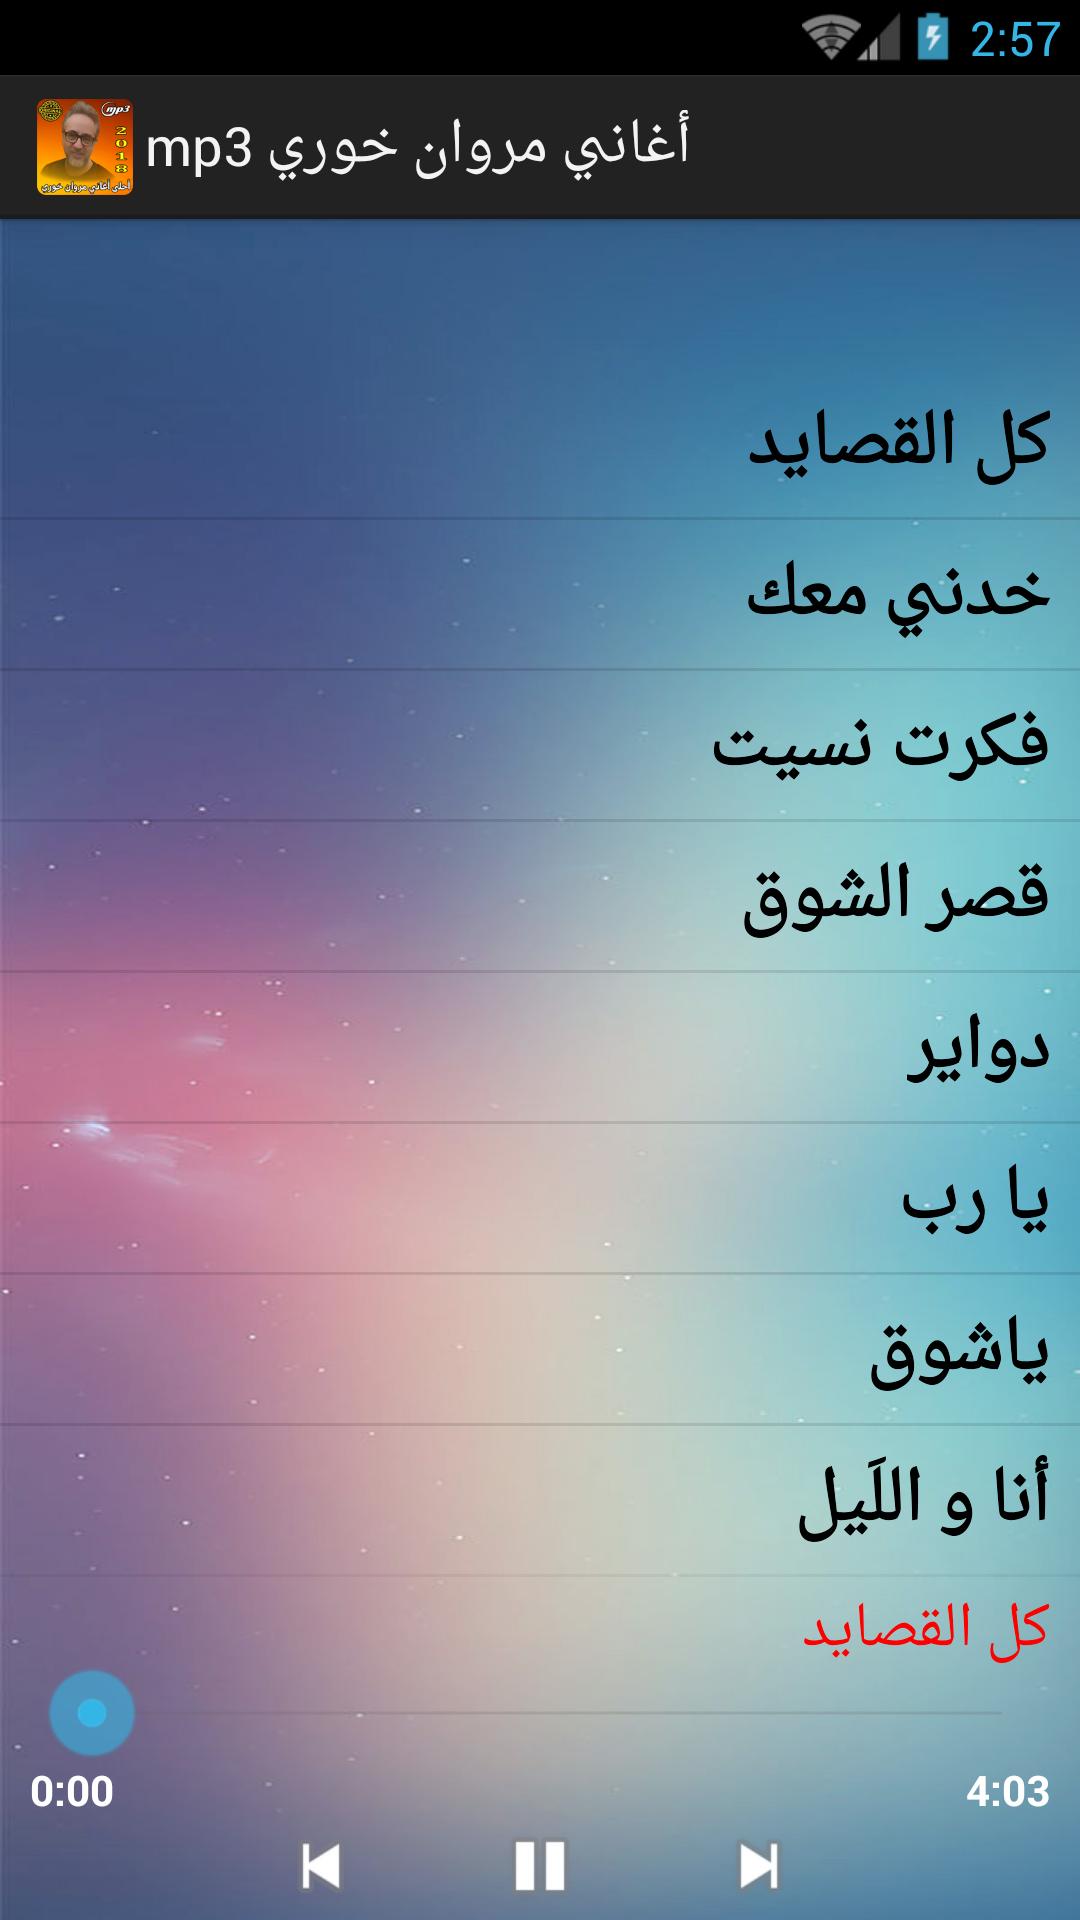 أغاني مروان خوري Mp3 For Android Apk Download